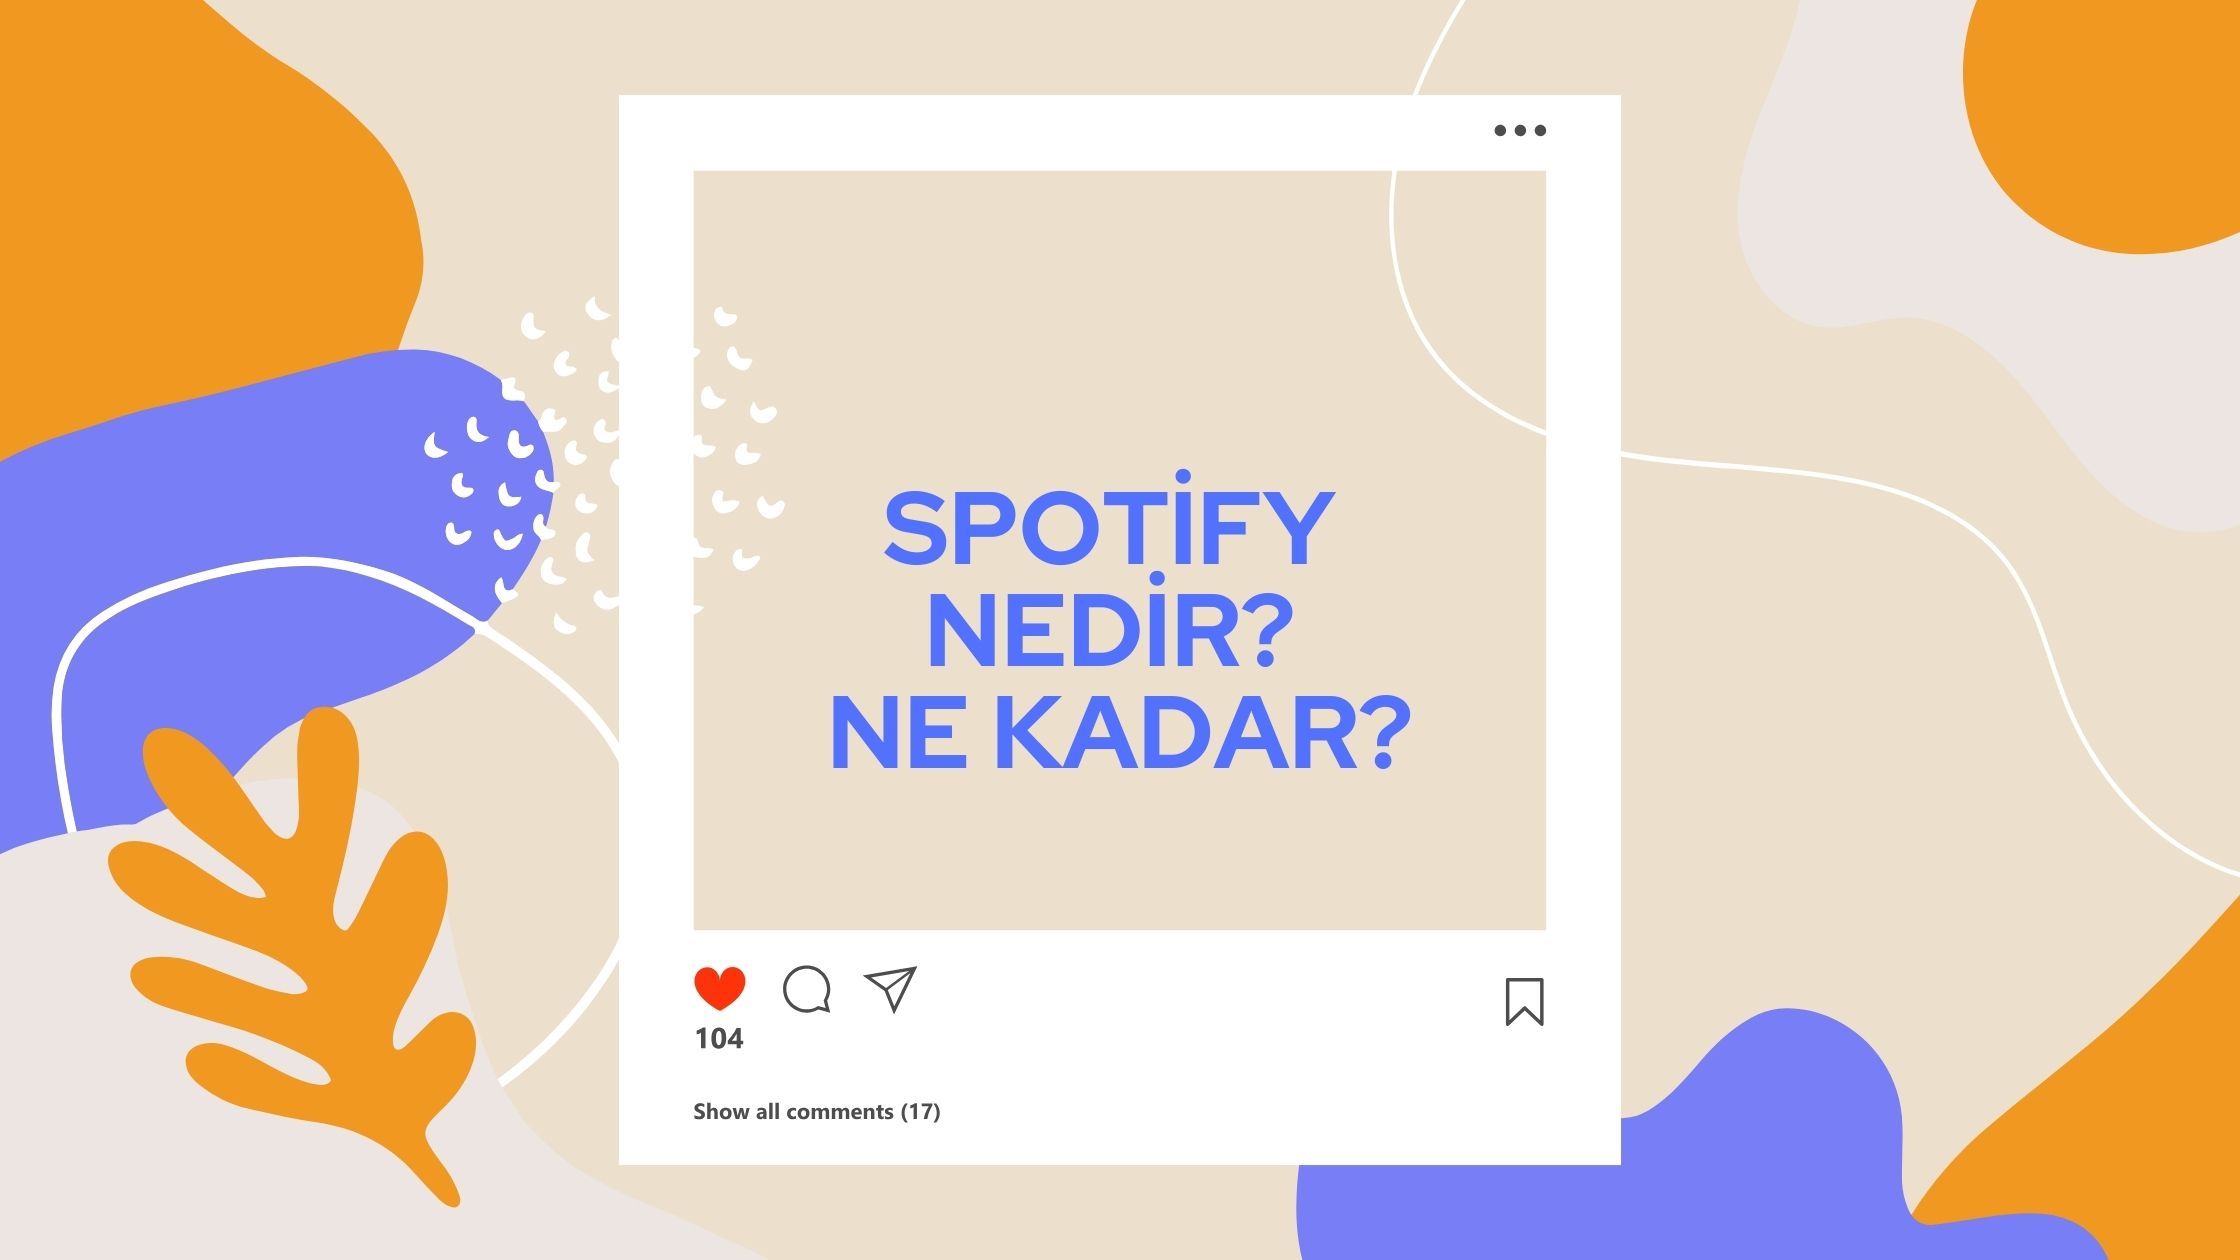 Spotify Nedir? Ne Kadar?